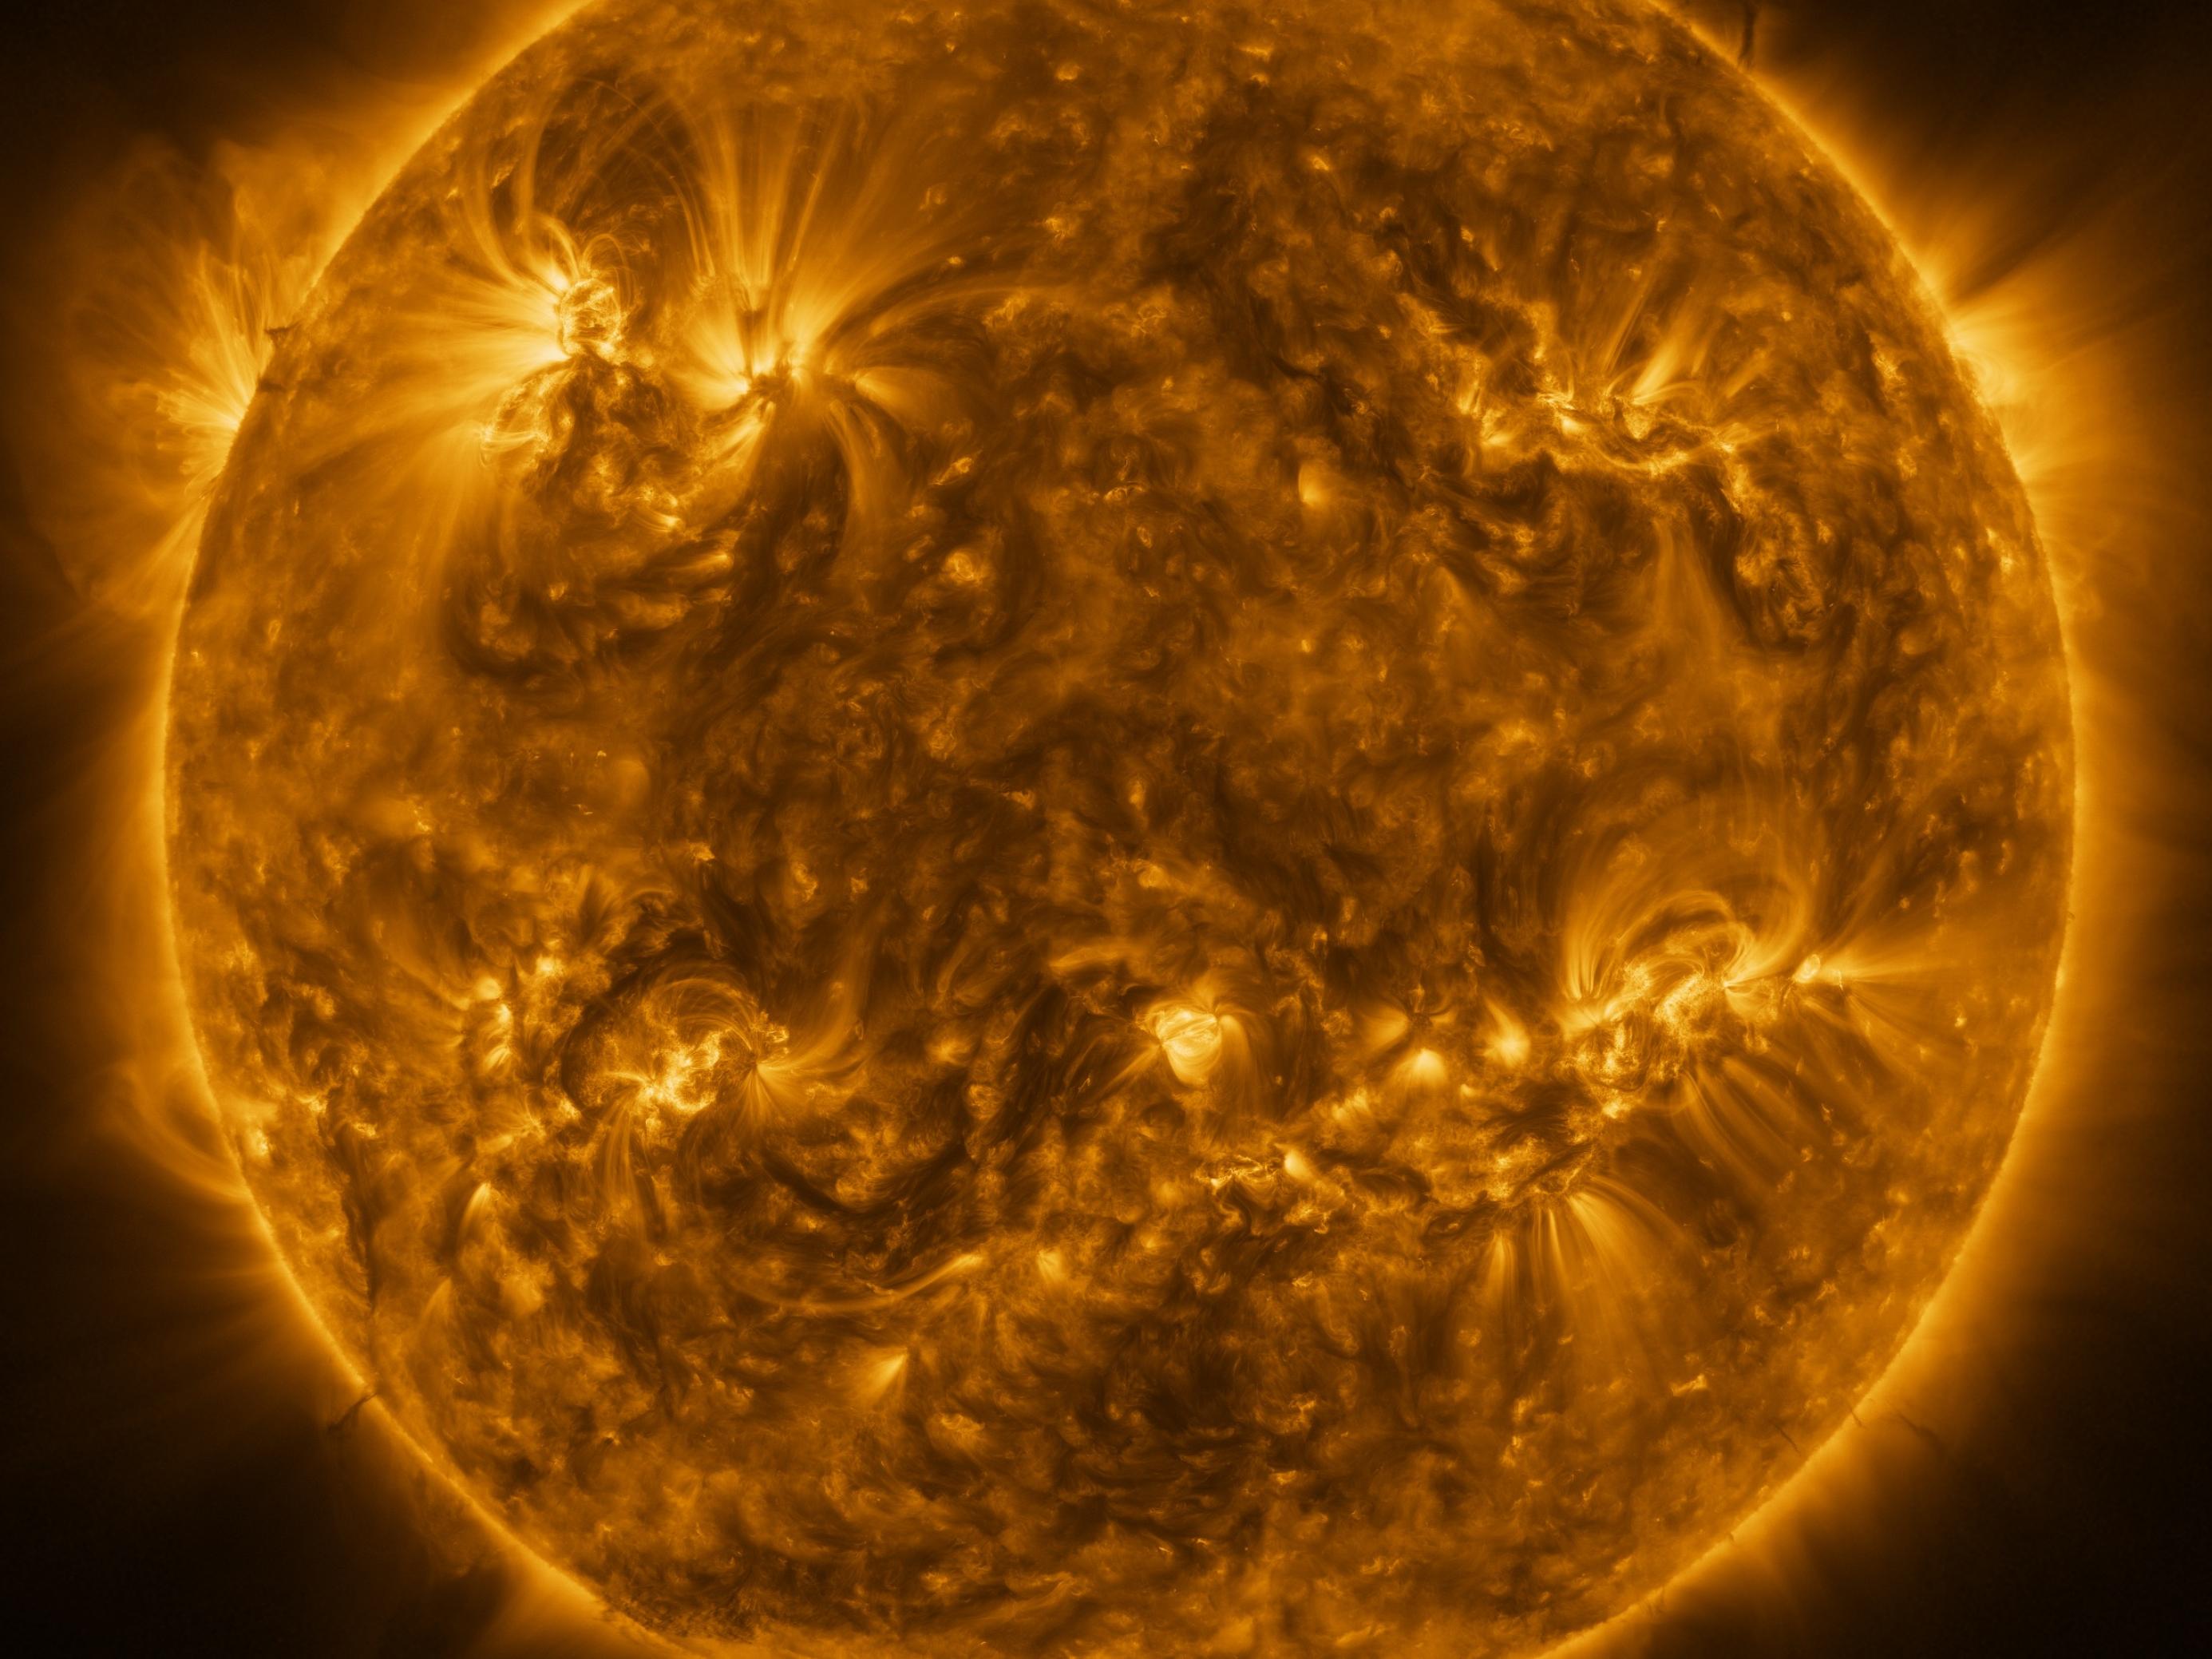 Der Feuerball der Sonne in einer sehr genauen Aufnahme, die das wilde Treiben auf dem Zentralgestirn zeigt.